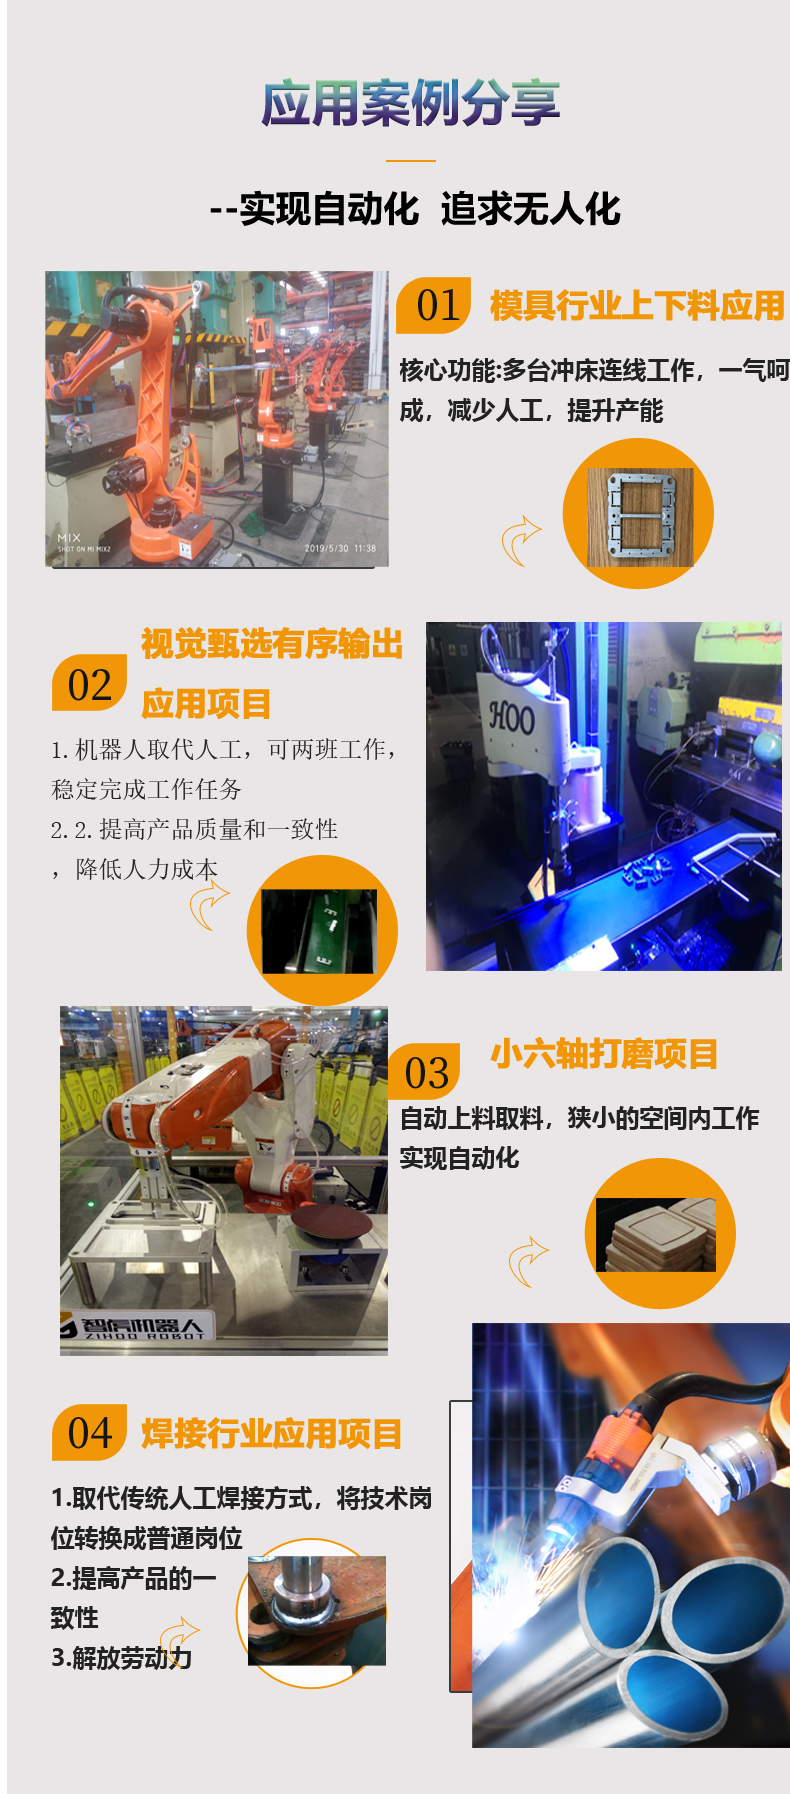 上海搬运冲压机器人价格